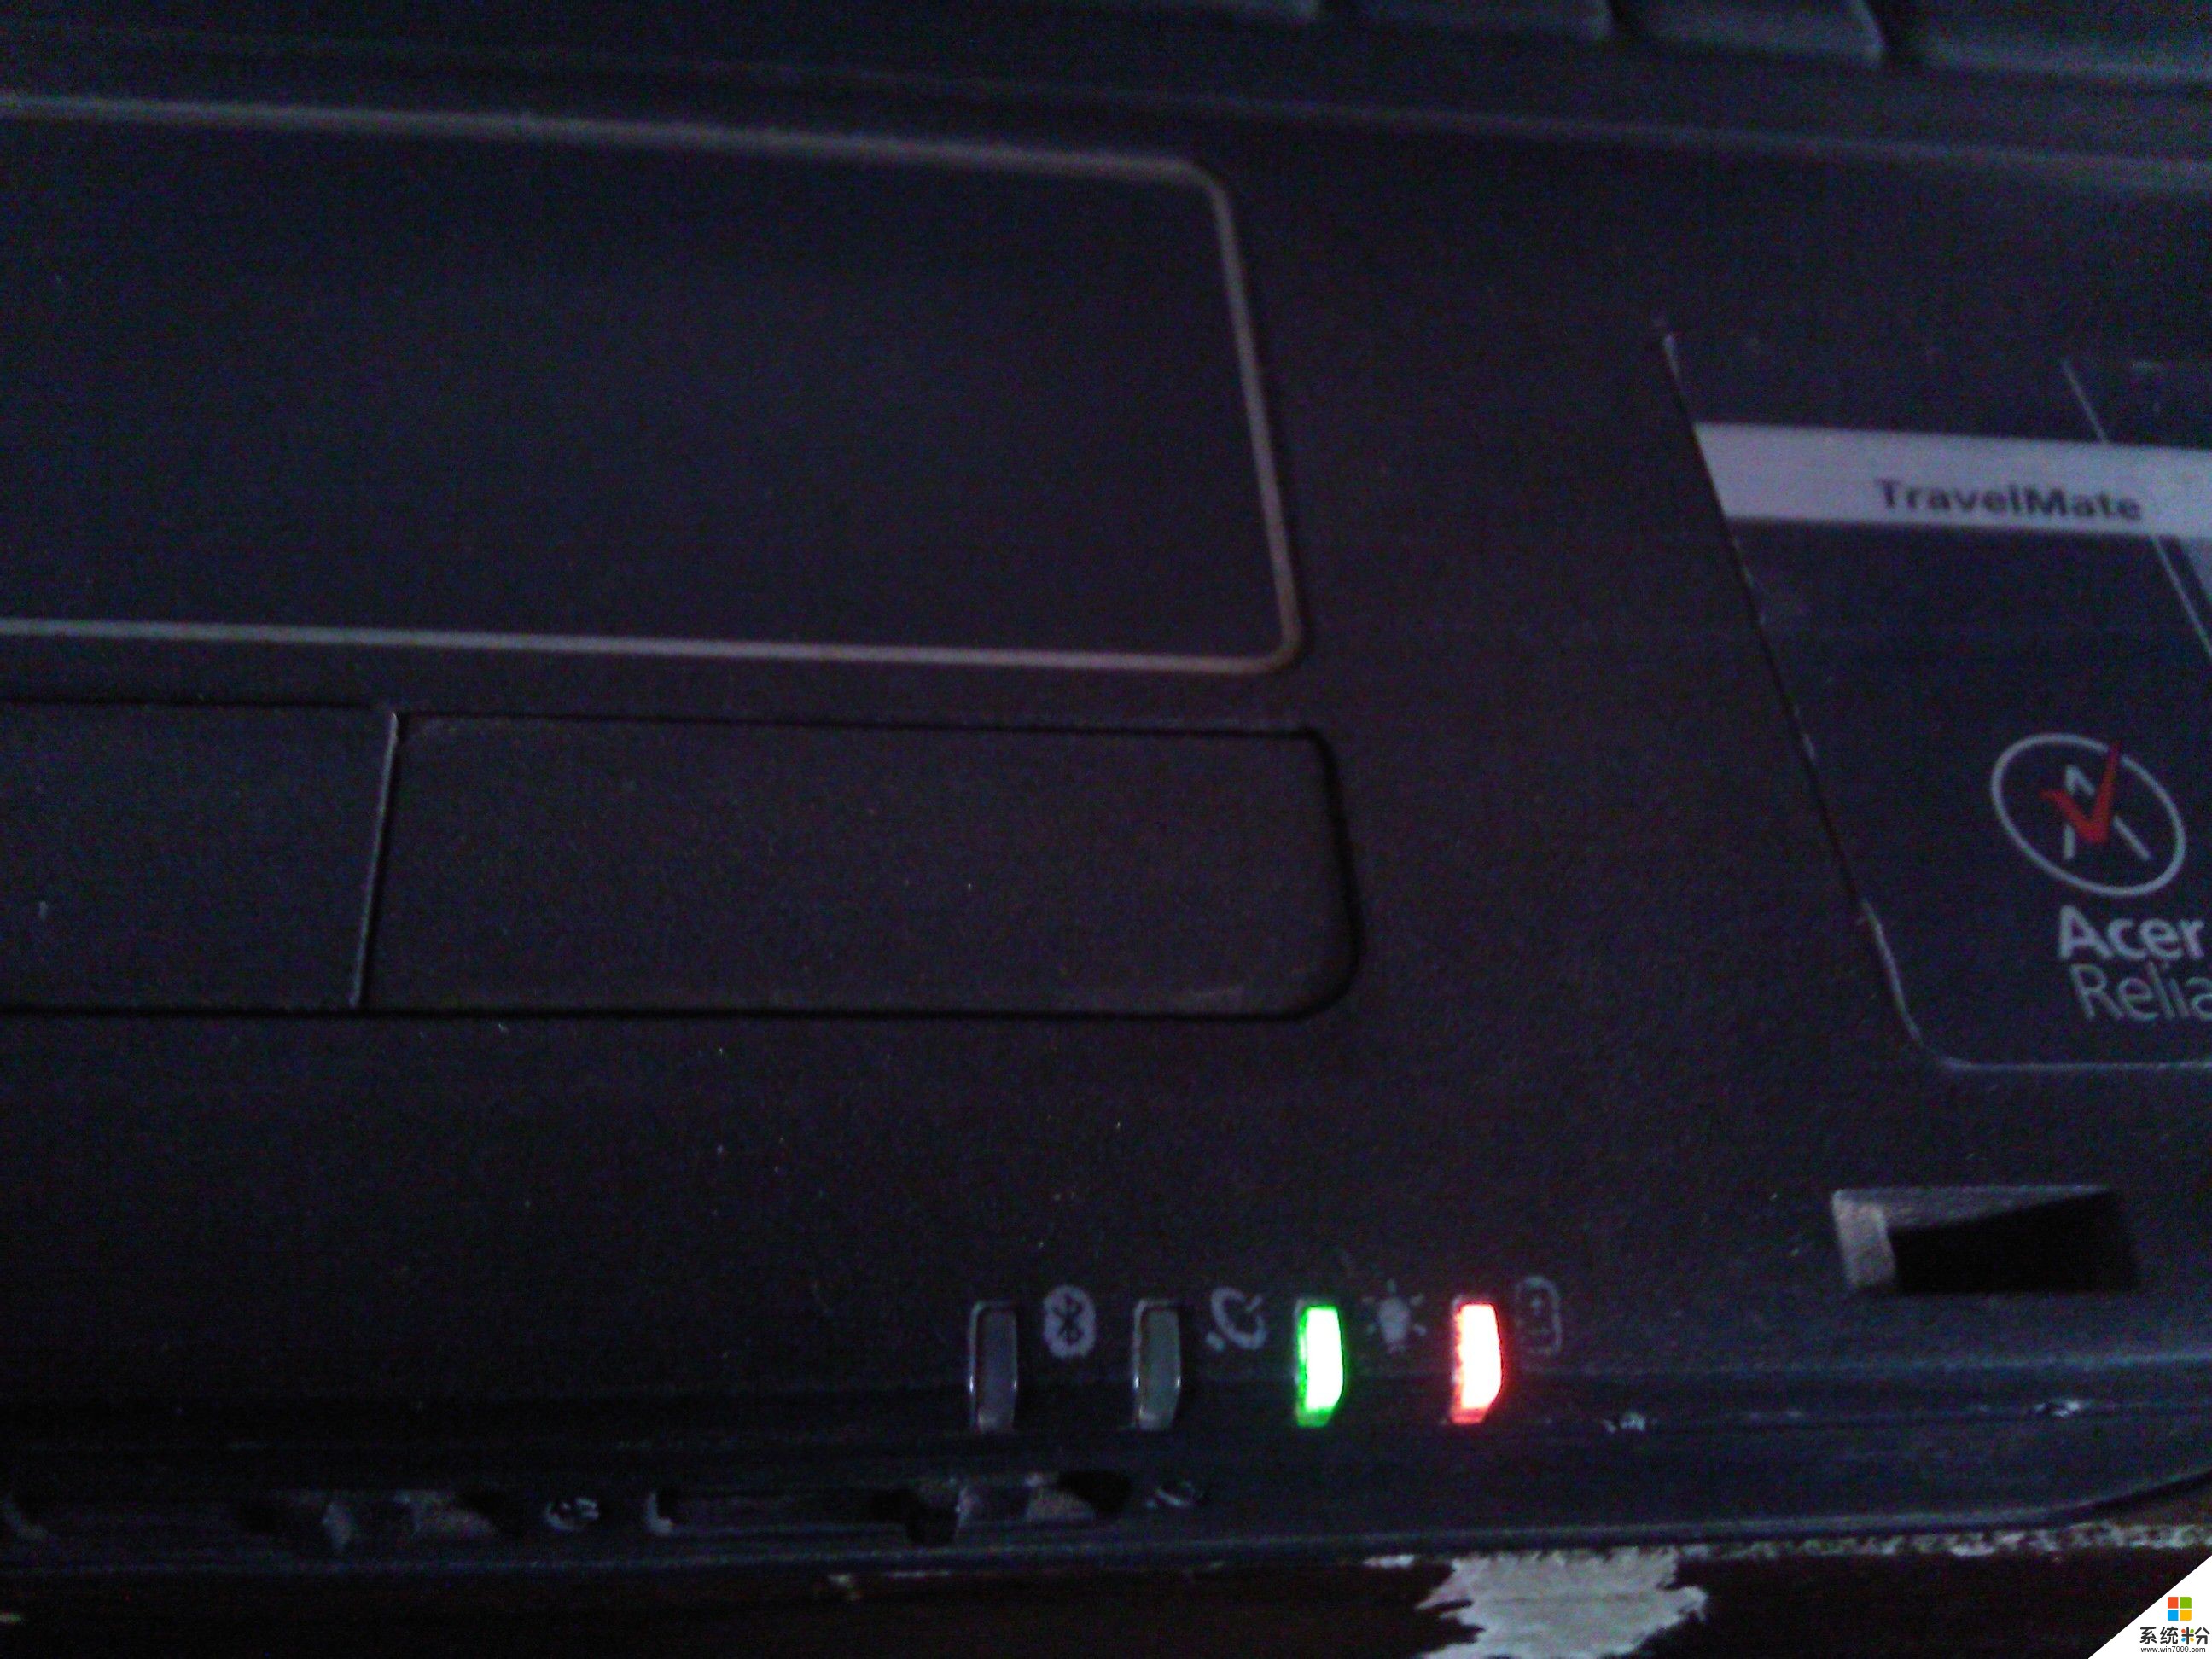 台式电脑开机后突然卡了一下，重启之后显示无信号，鼠标灯亮着，键盘灯不亮，主机仍在工作。(图1)